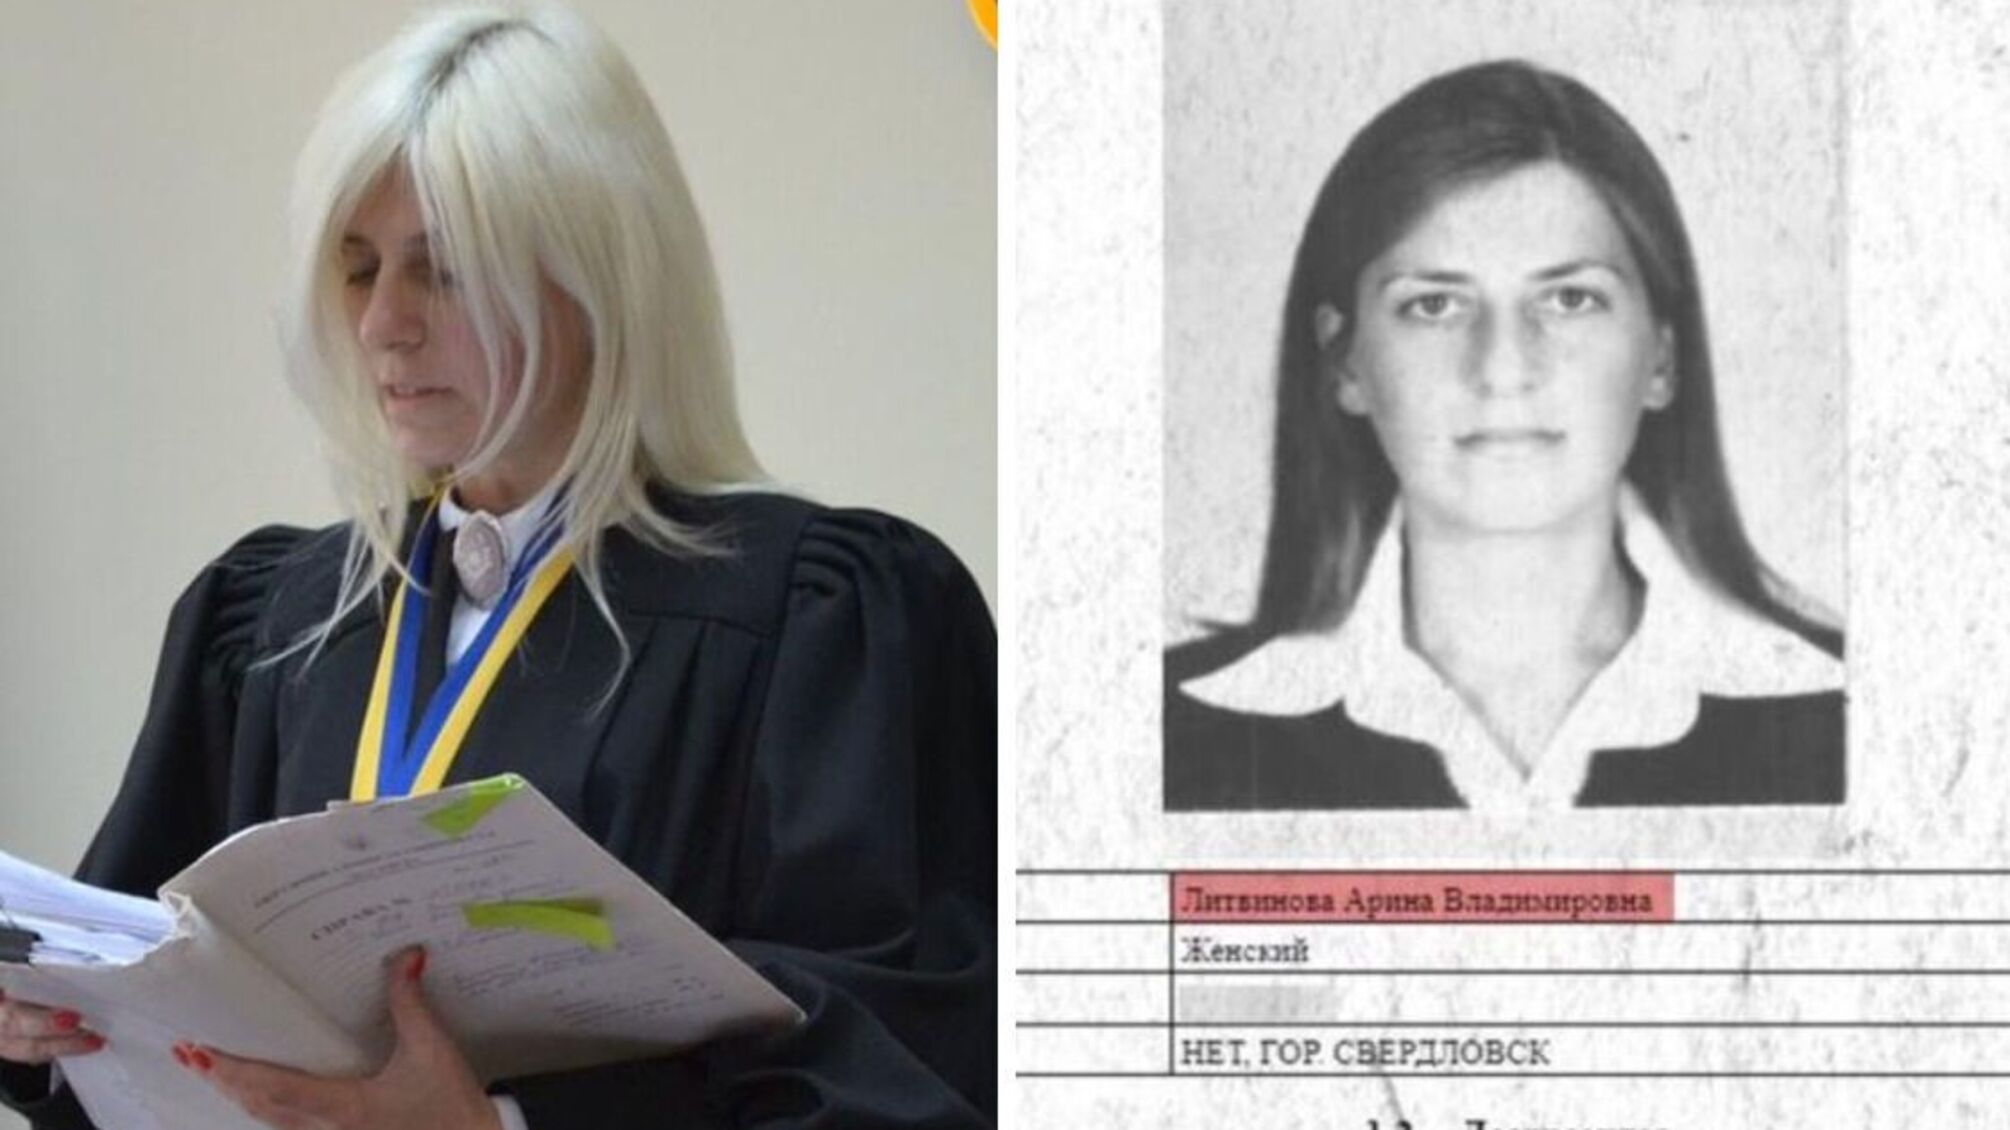 Судья Литвинова с российским паспортом